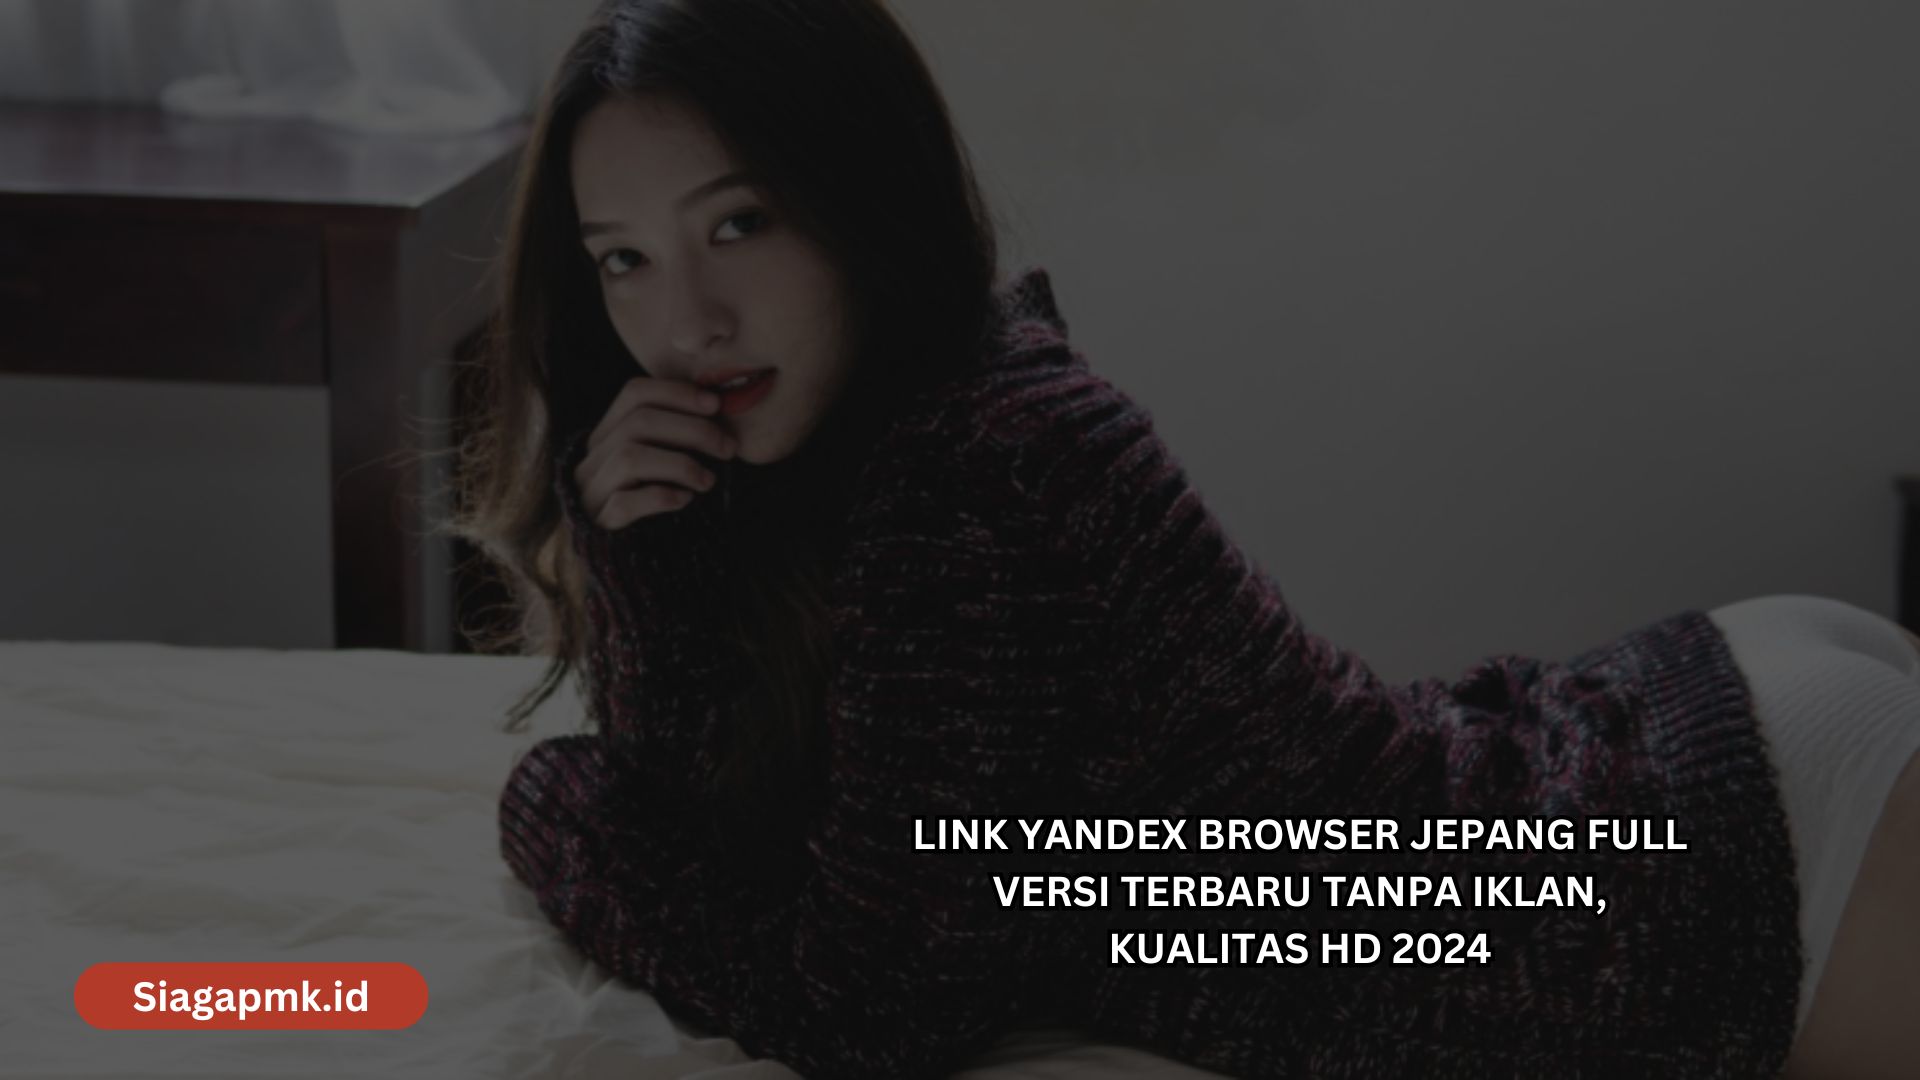 Link Yandex Browser Jepang Full Versi Terbaru Tanpa Iklan, Kualitas HD 2024